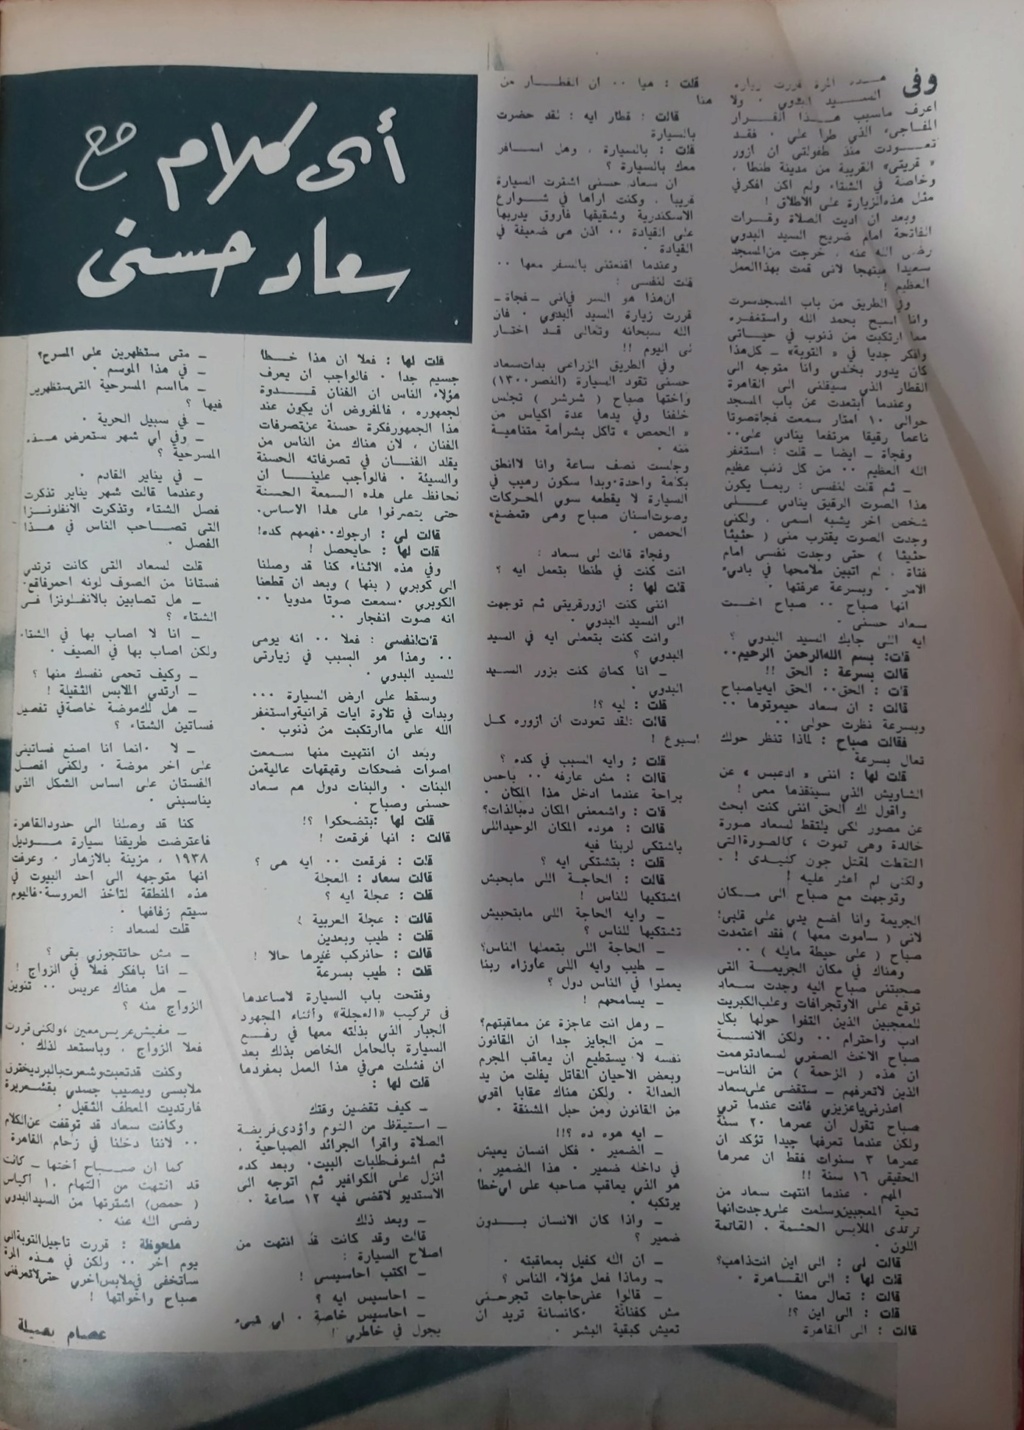 سعاد - حوار صحفي : أي كلام مع .. سعاد حسني 1963 م 171